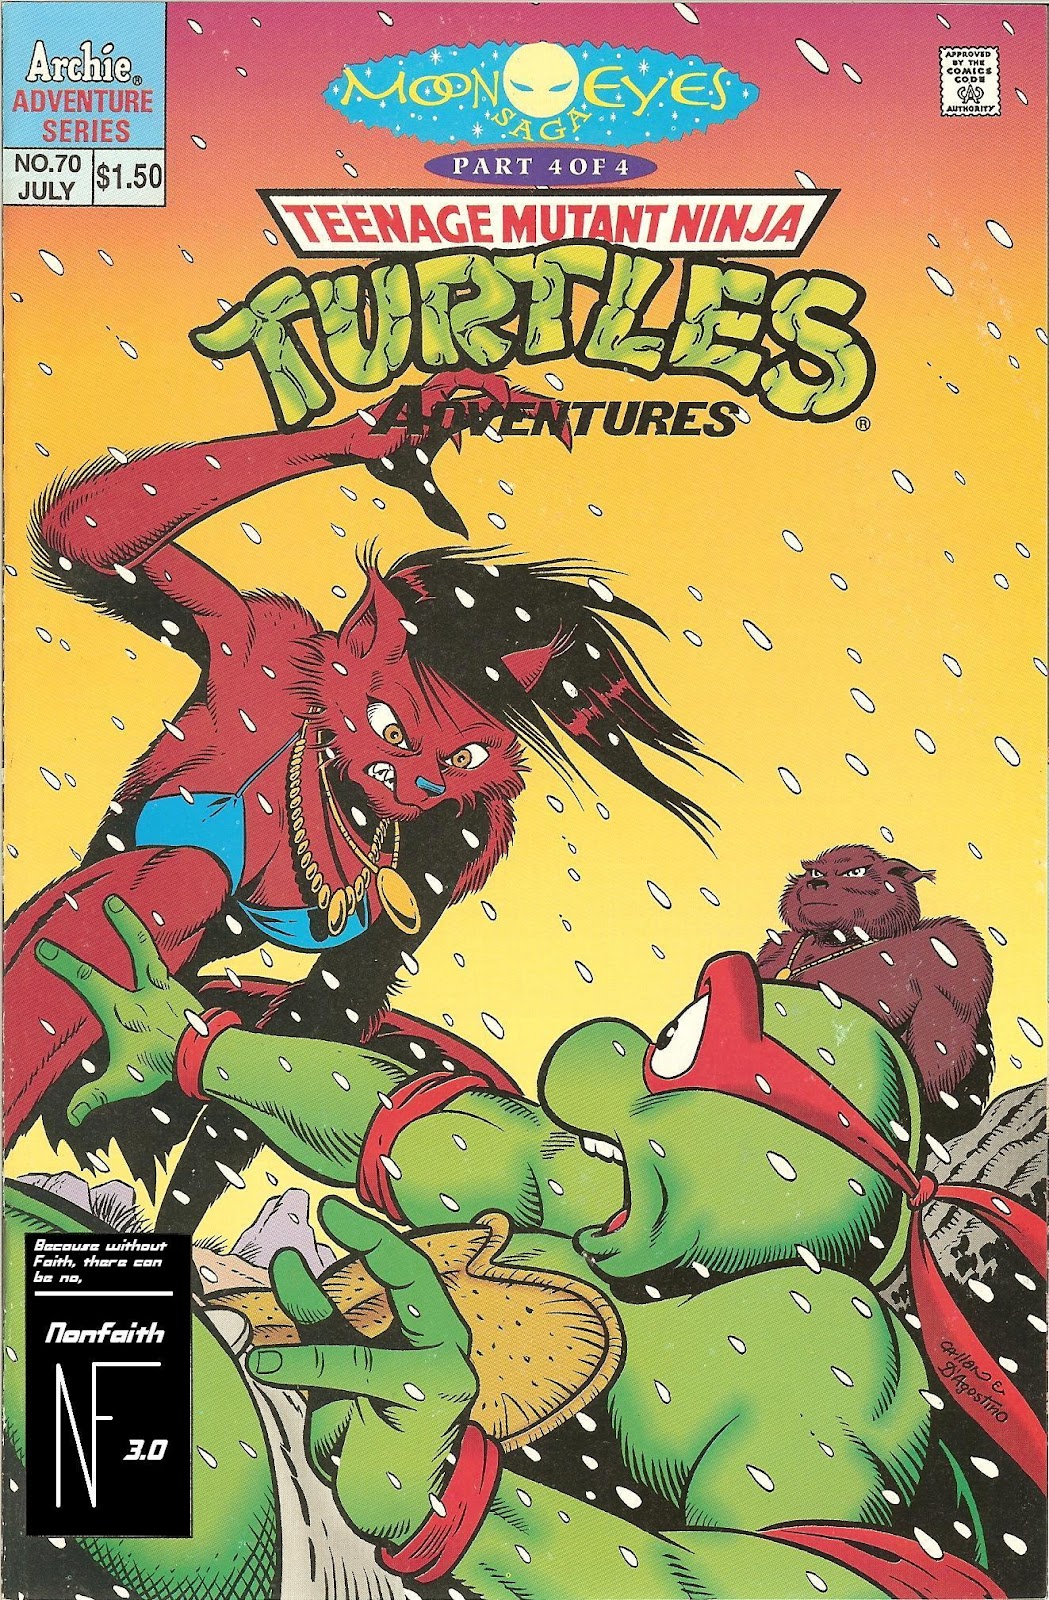 Teenage Mutant Ninja Turtles Adventures (1989) issue 70 - Page 1